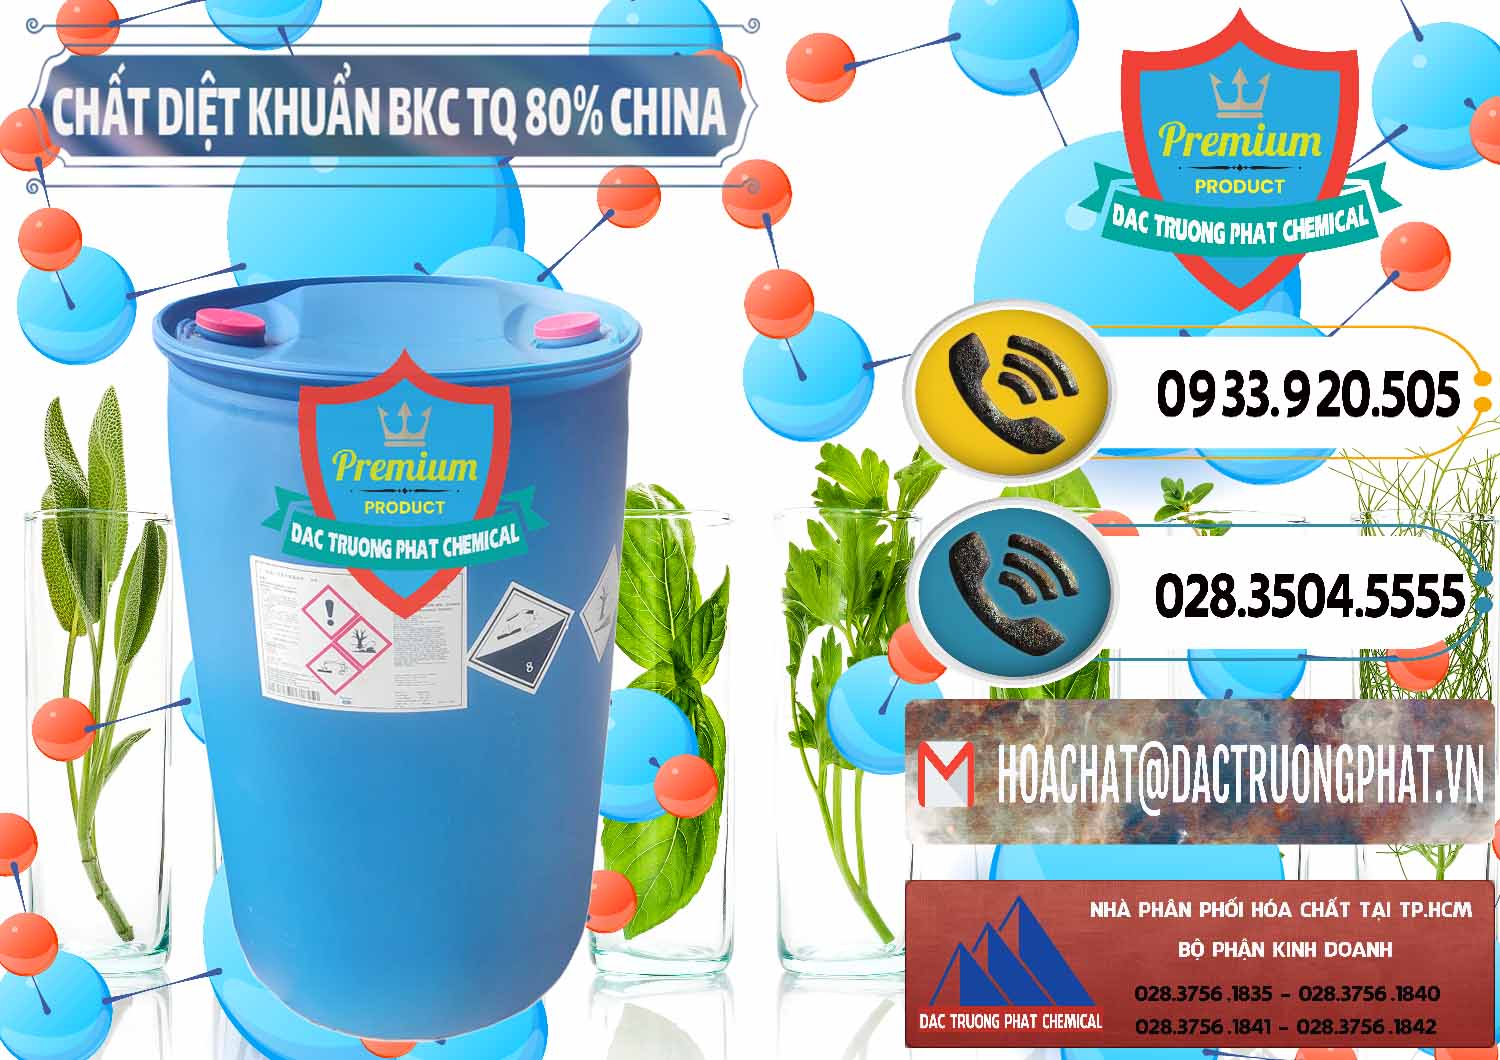 Đơn vị chuyên cung cấp - bán BKC - Benzalkonium Chloride 80% Trung Quốc China - 0310 - Đơn vị chuyên kinh doanh _ cung cấp hóa chất tại TP.HCM - hoachatdetnhuom.vn